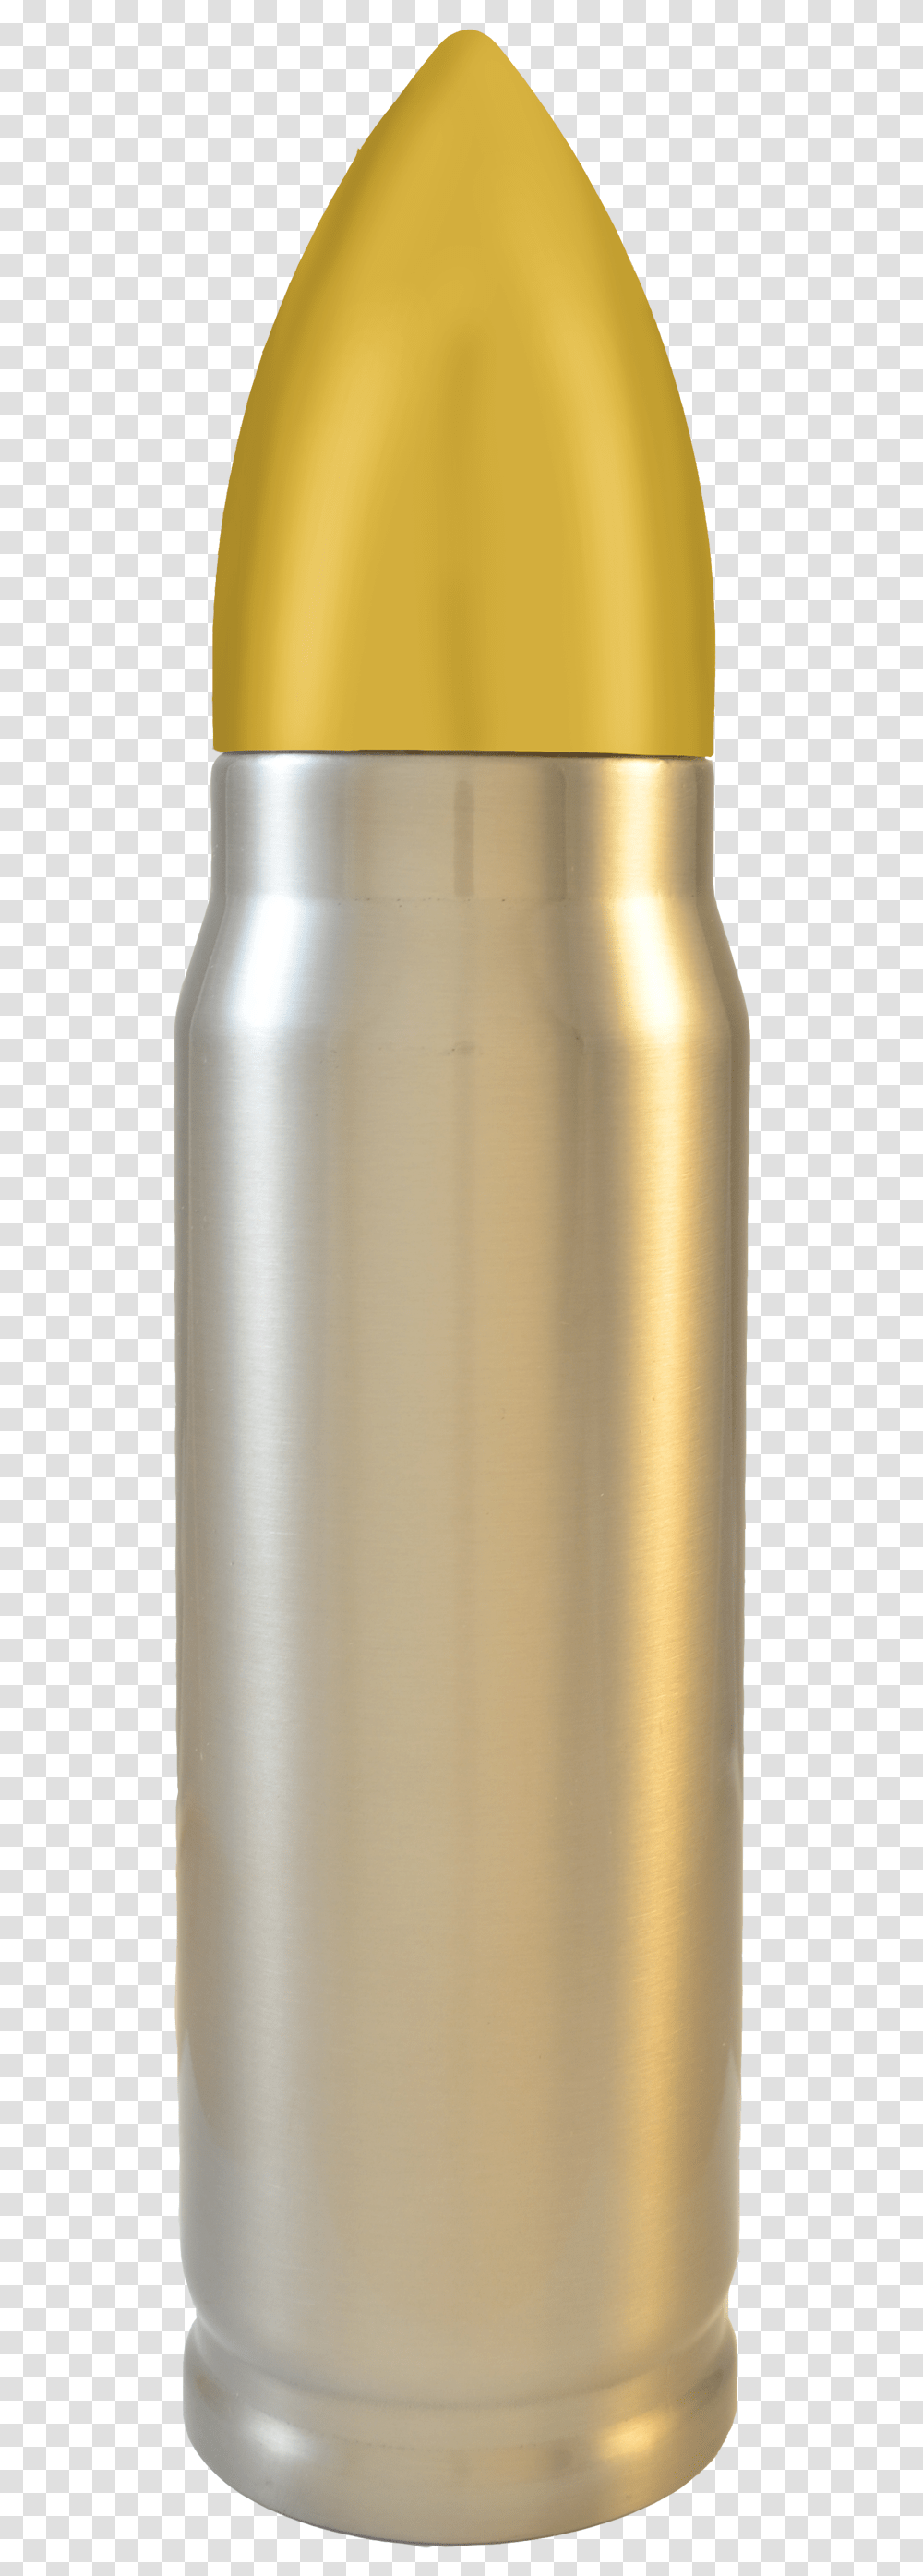 Bullet Thermos Case Bullet, Appliance, Milk, Beverage, Drink Transparent Png